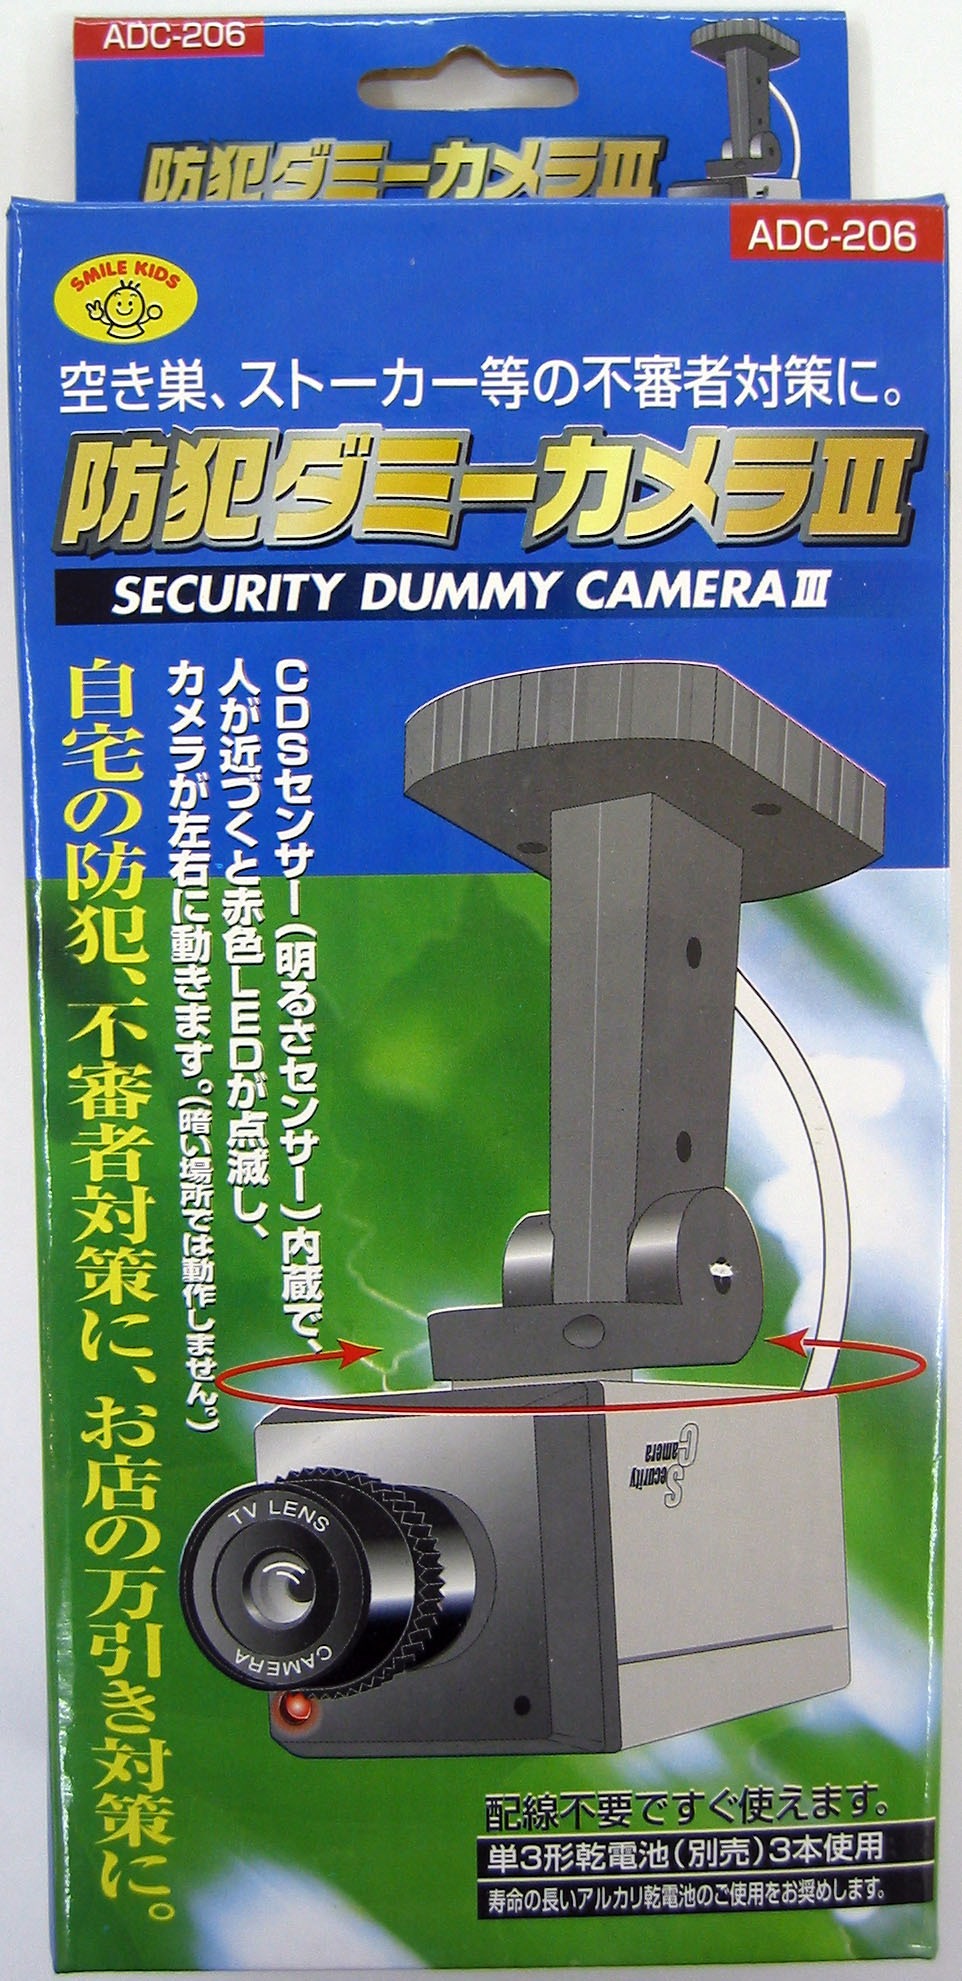 防犯ダミーカメラⅢ - 旭電機化成㈱ 公式HP